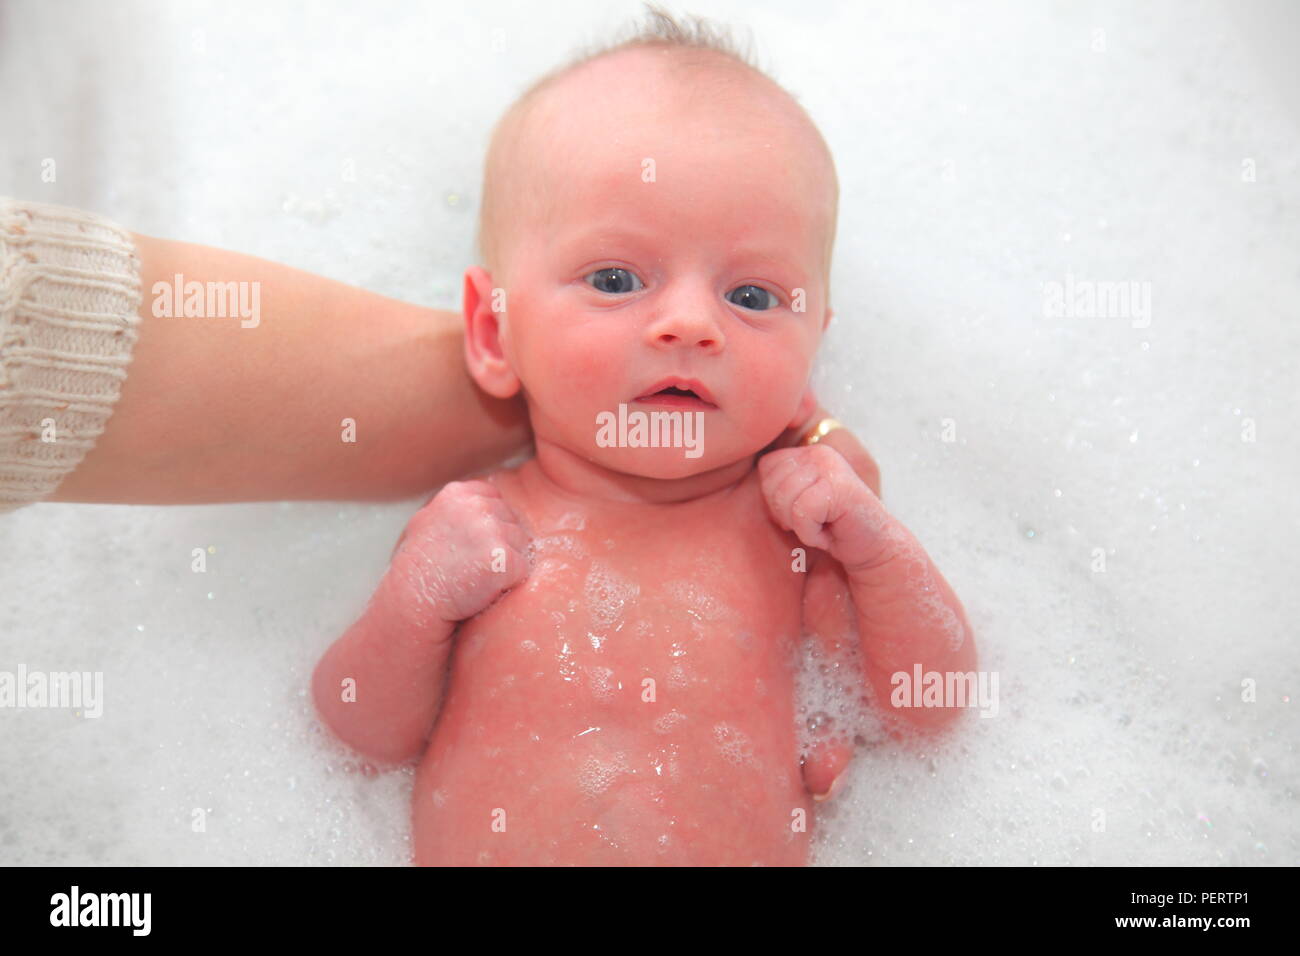 Un bebé recién nacido tiene un baño por primera vez pocos días después de haber nacido. Foto de stock